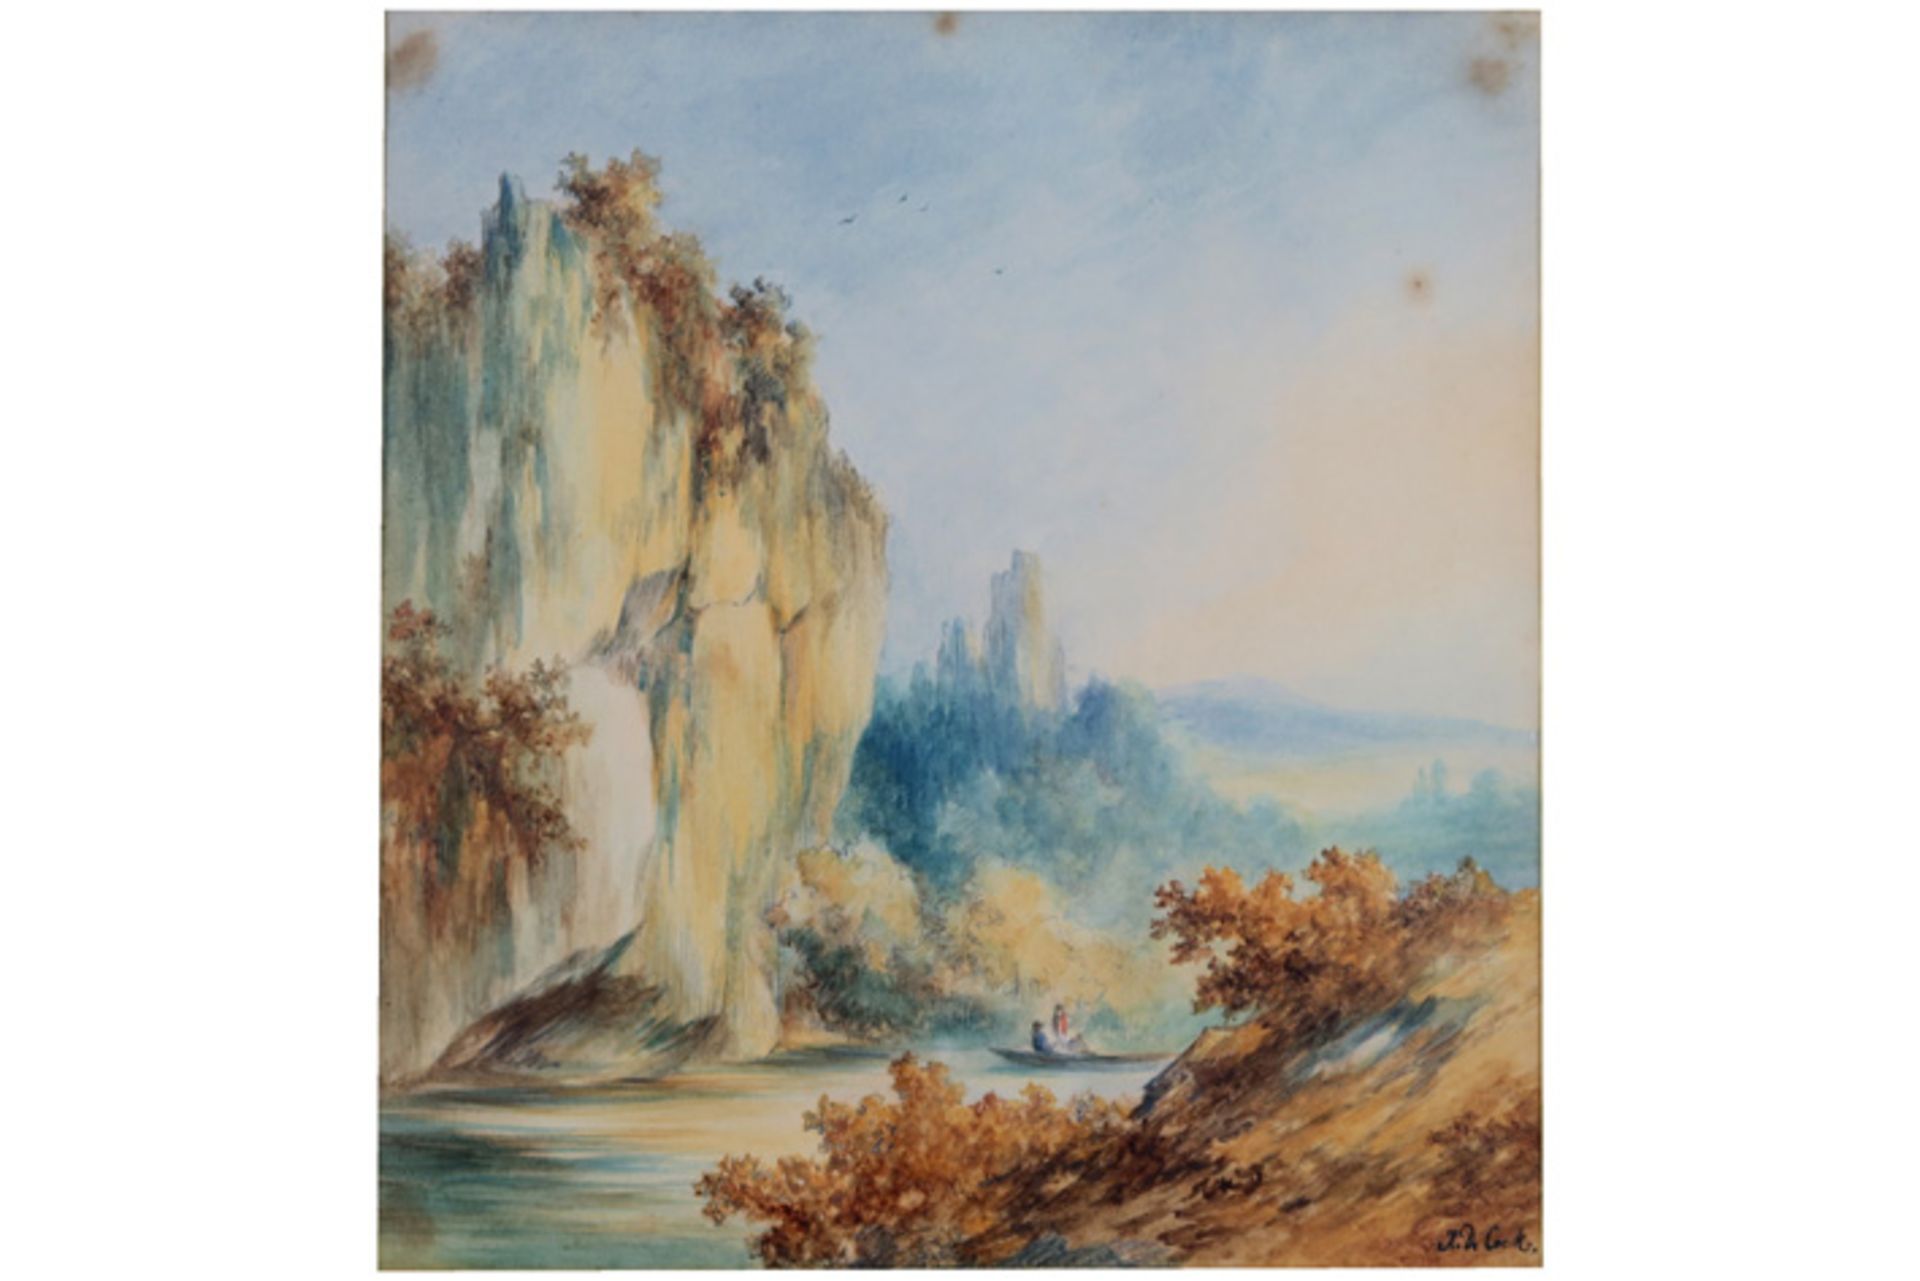 DE COCK XAVIER (1818 - 1896) aquarel : "Bootje met twee personages op een bergrivier" - 23 x 21,5